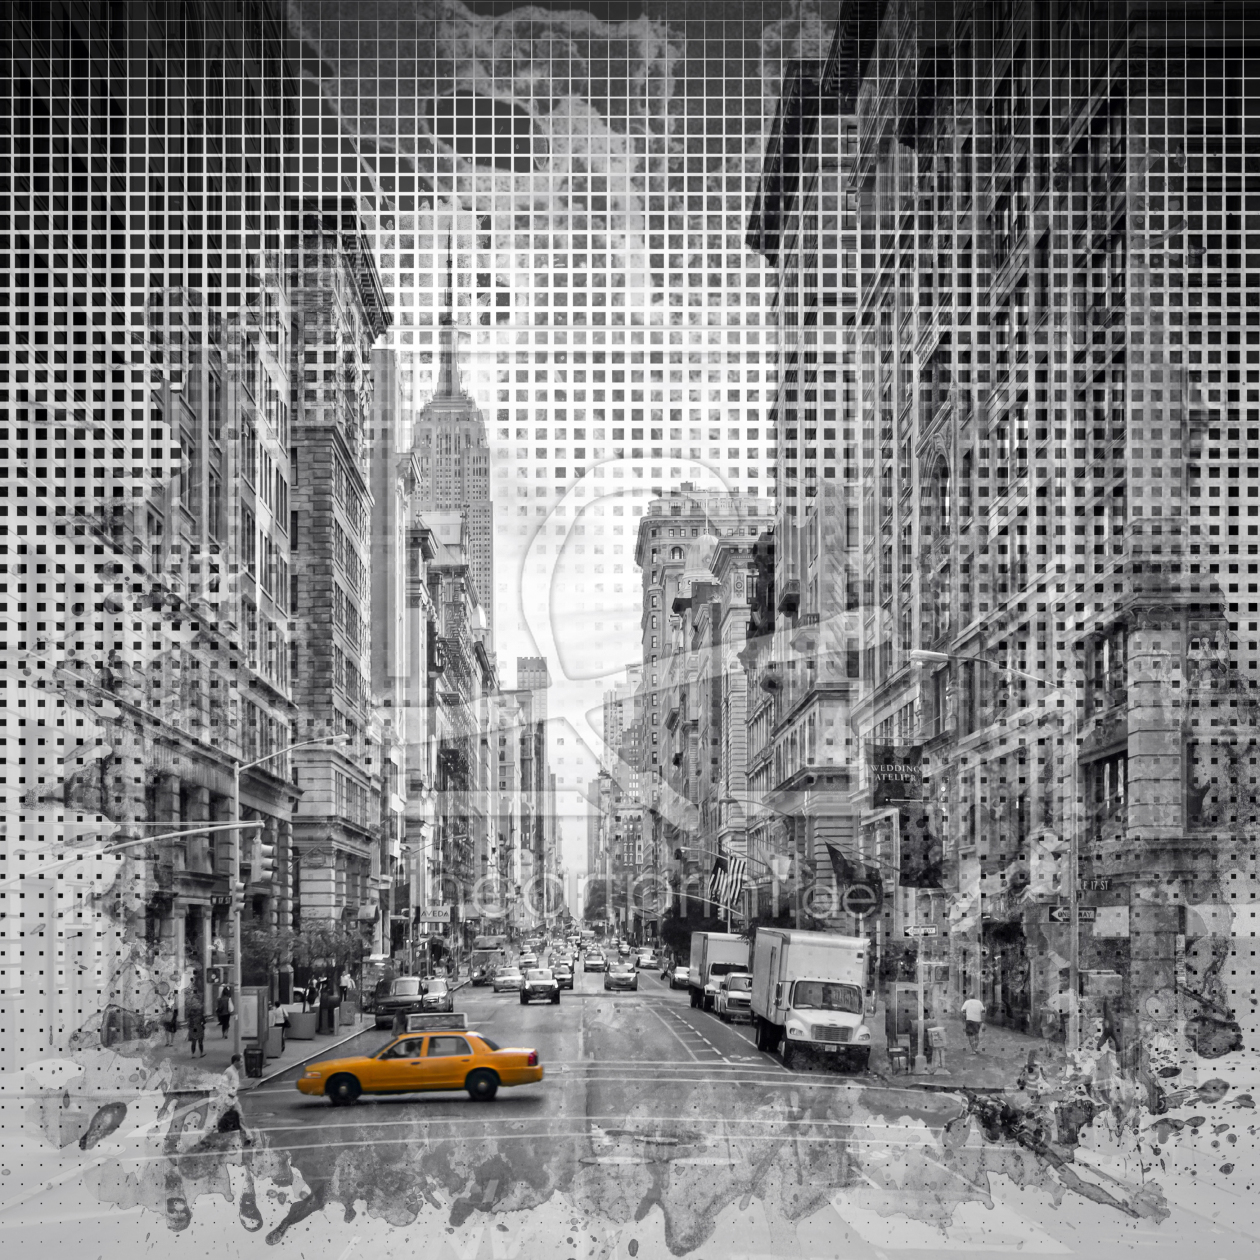 Bild-Nr.: 11943425 Graphic Art NEW YORK CITY 5th Avenue erstellt von Melanie Viola